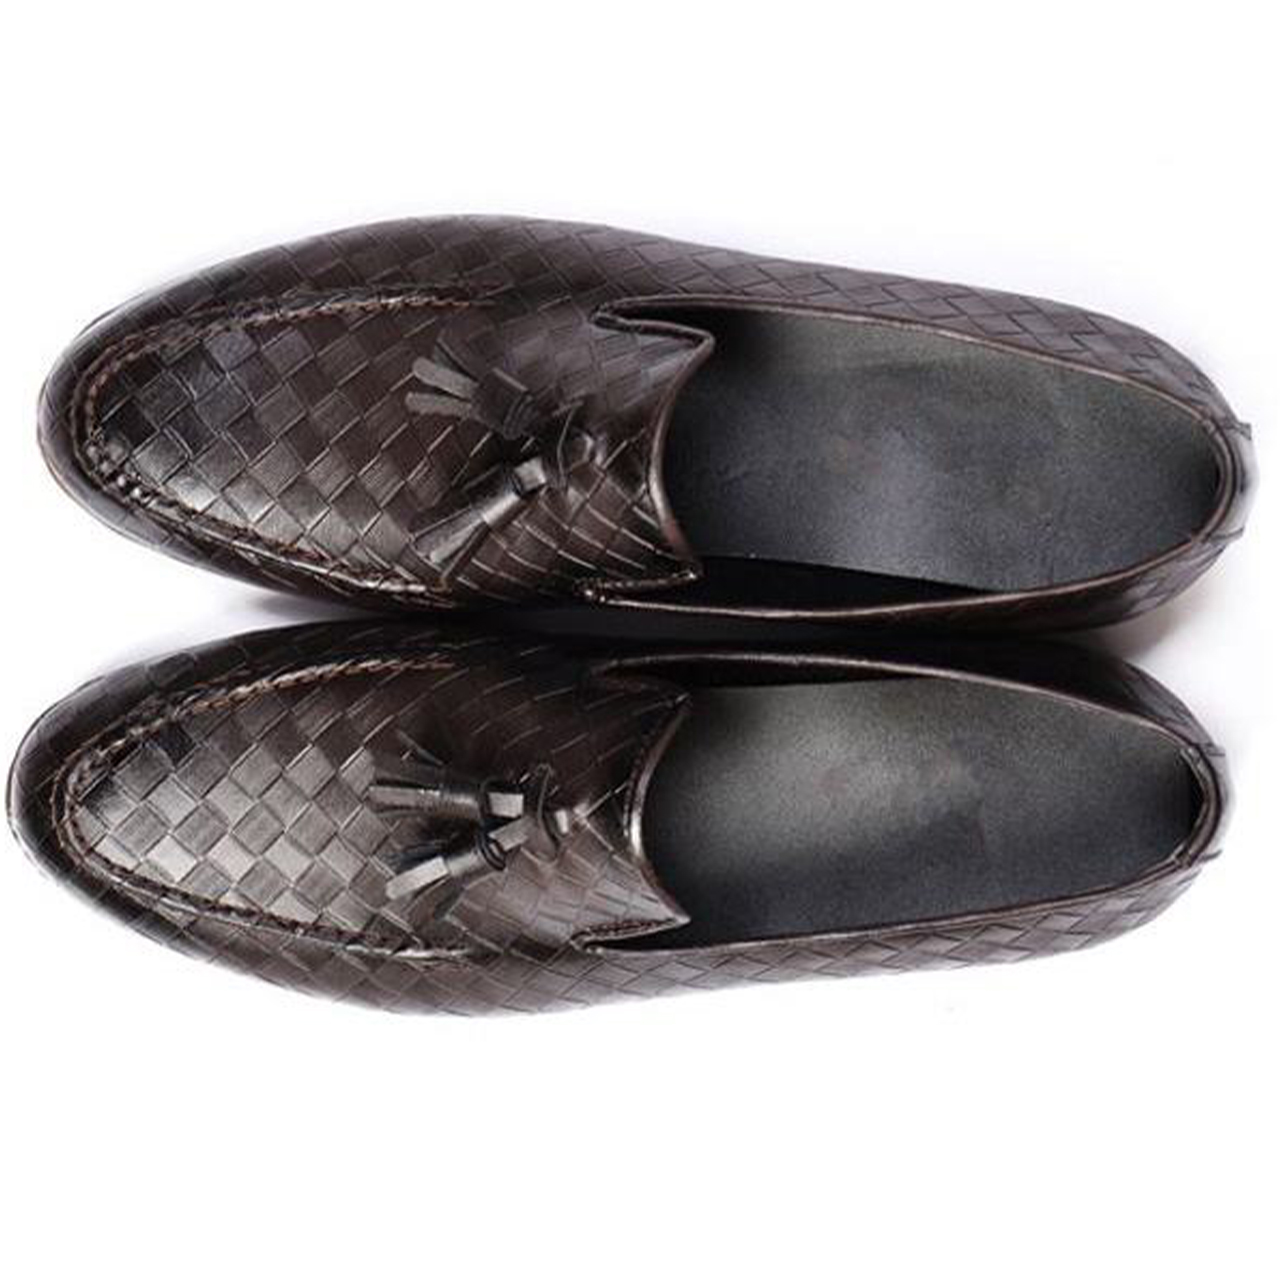  کفش مردانه کد F332146